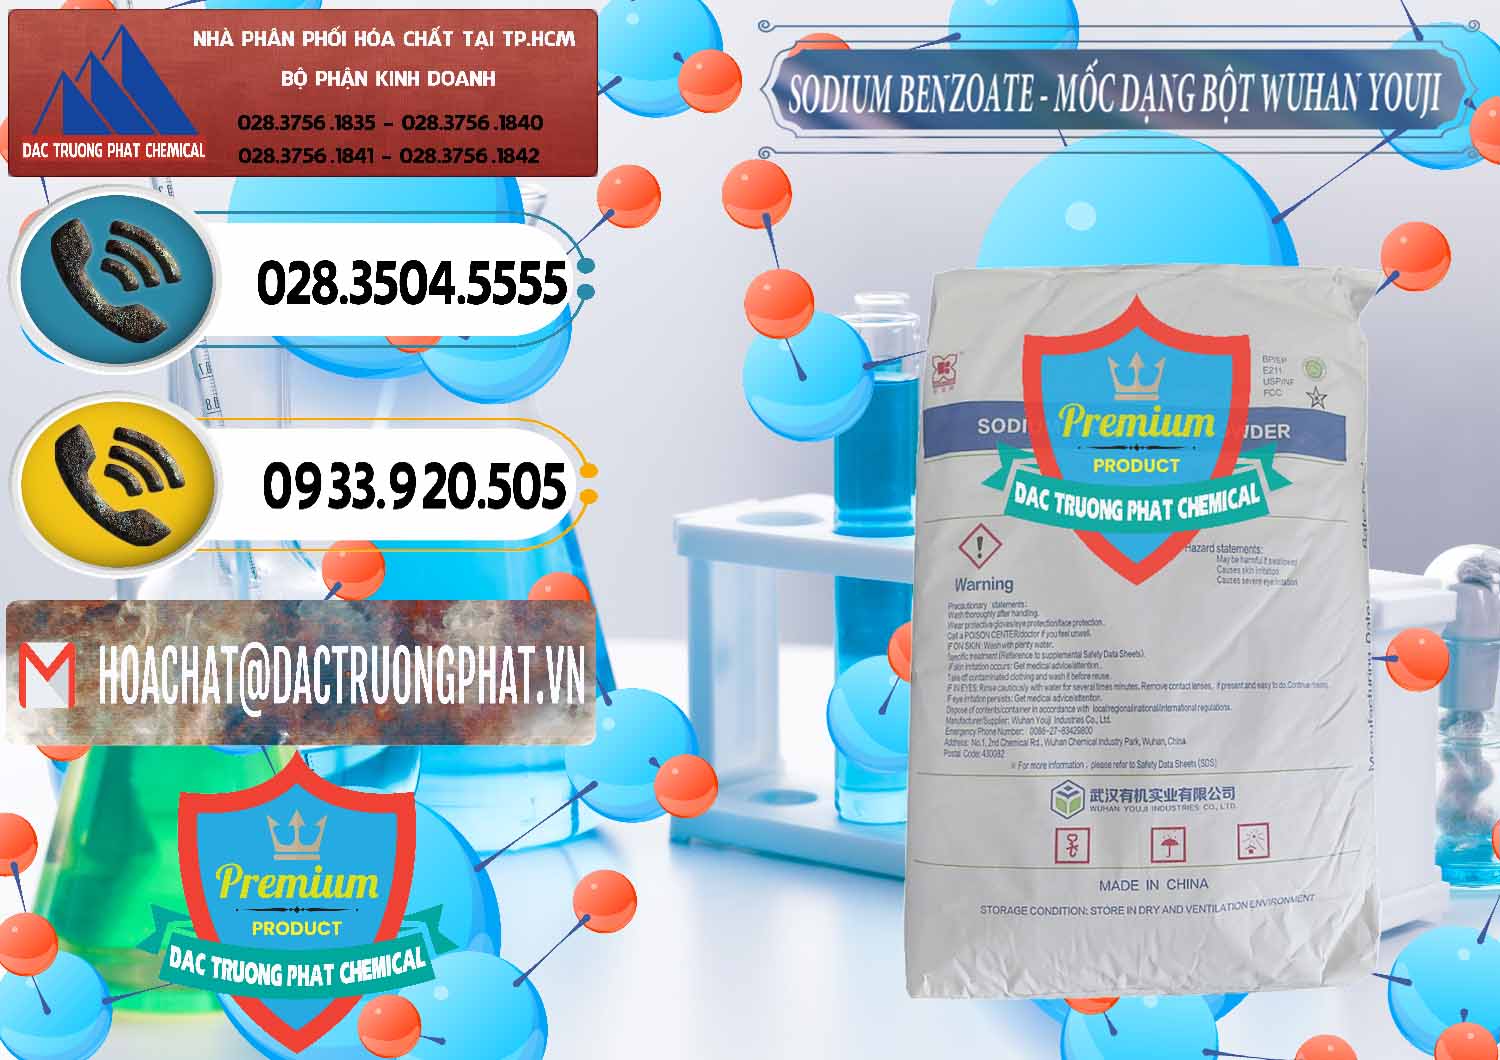 Cty chuyên phân phối ( bán ) Sodium Benzoate - Mốc Dạng Bột Food Grade Wuhan Youji Trung Quốc China - 0275 - Kinh doanh - cung cấp hóa chất tại TP.HCM - hoachatdetnhuom.vn